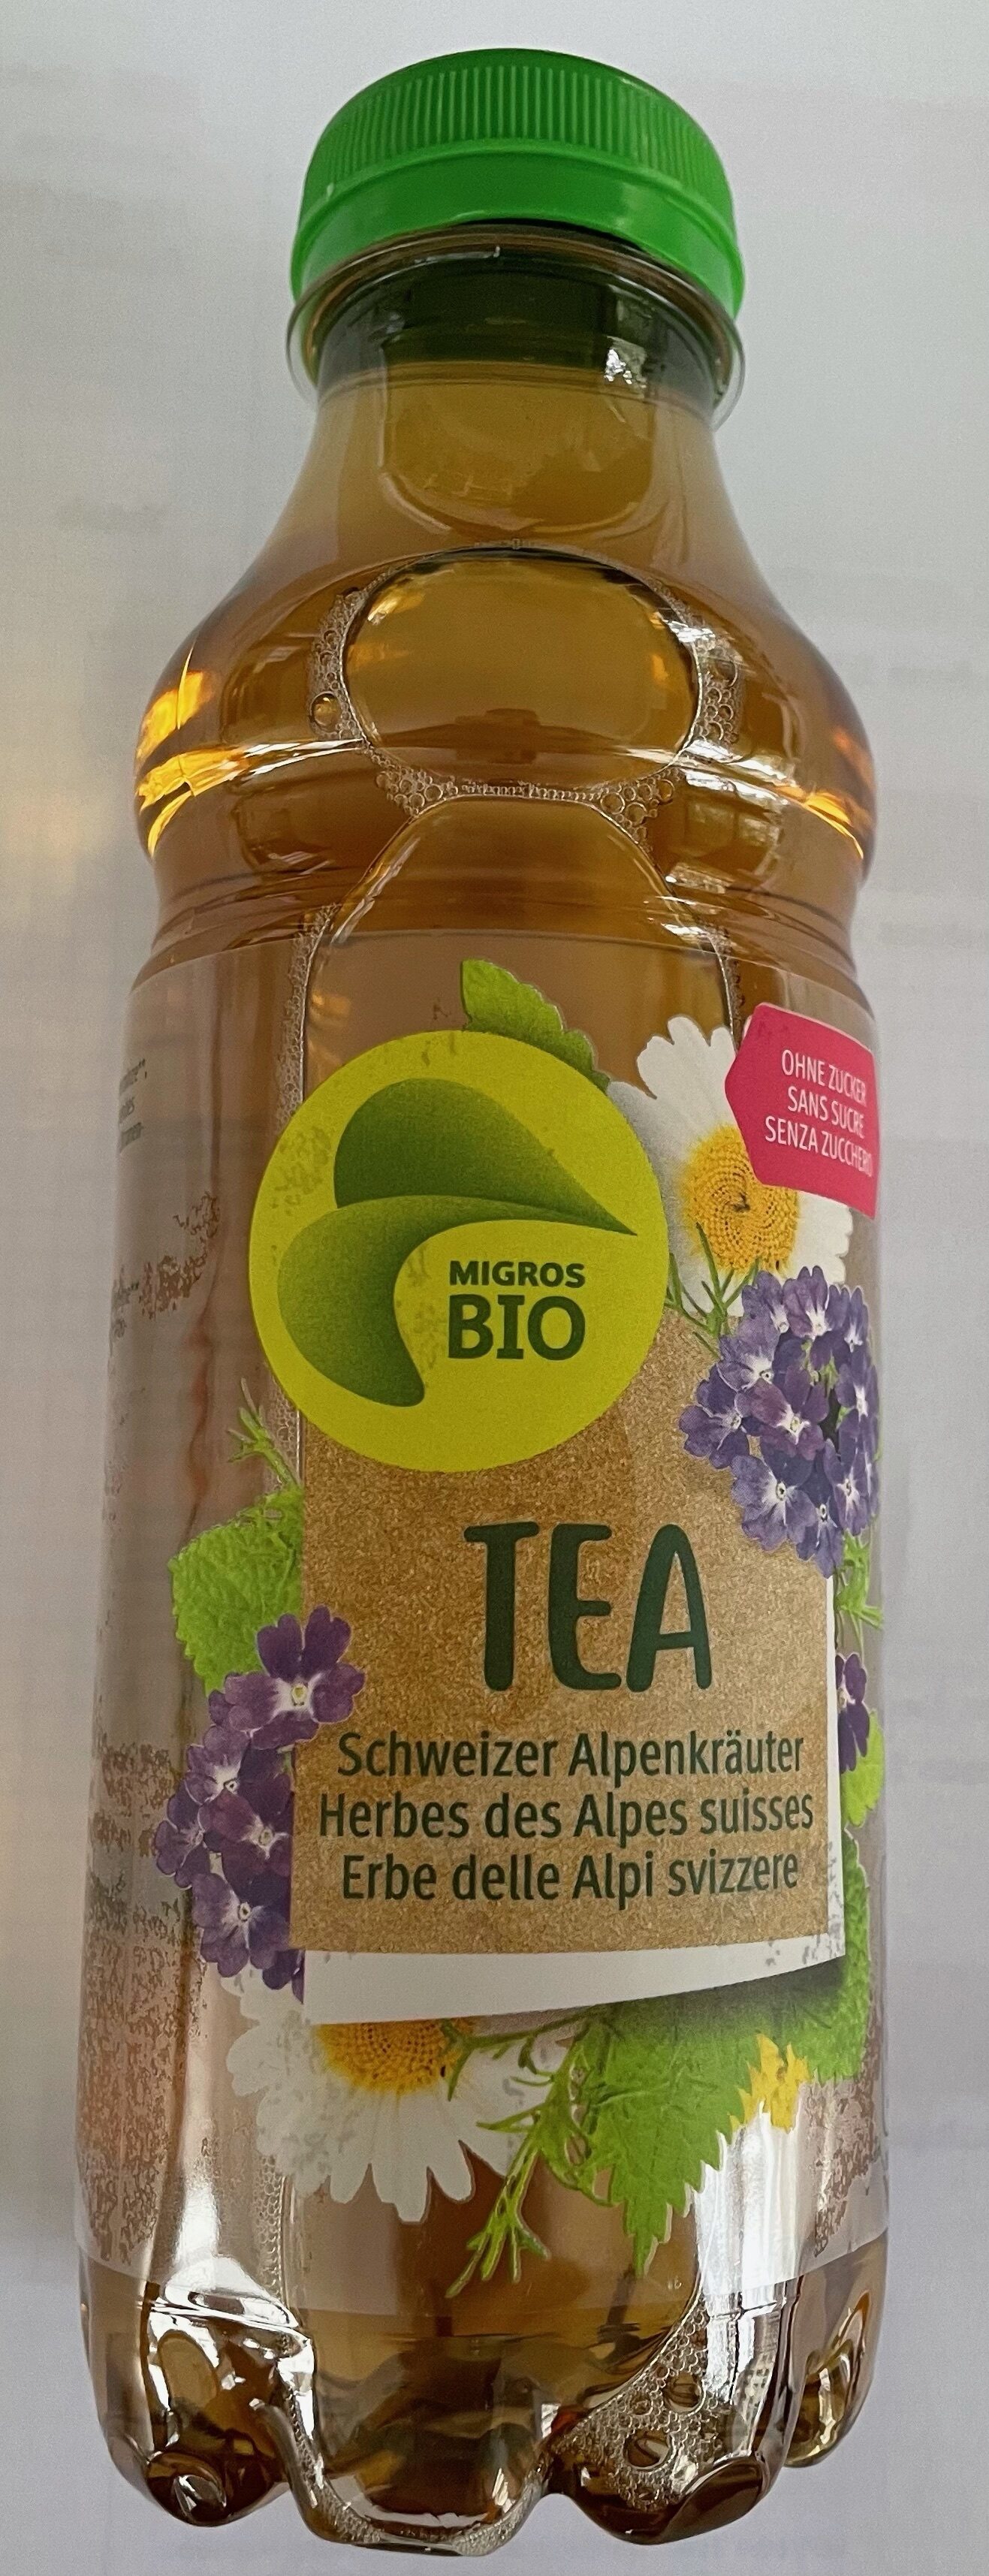 TEA Herbes des Alpes suisses - Prodotto - fr